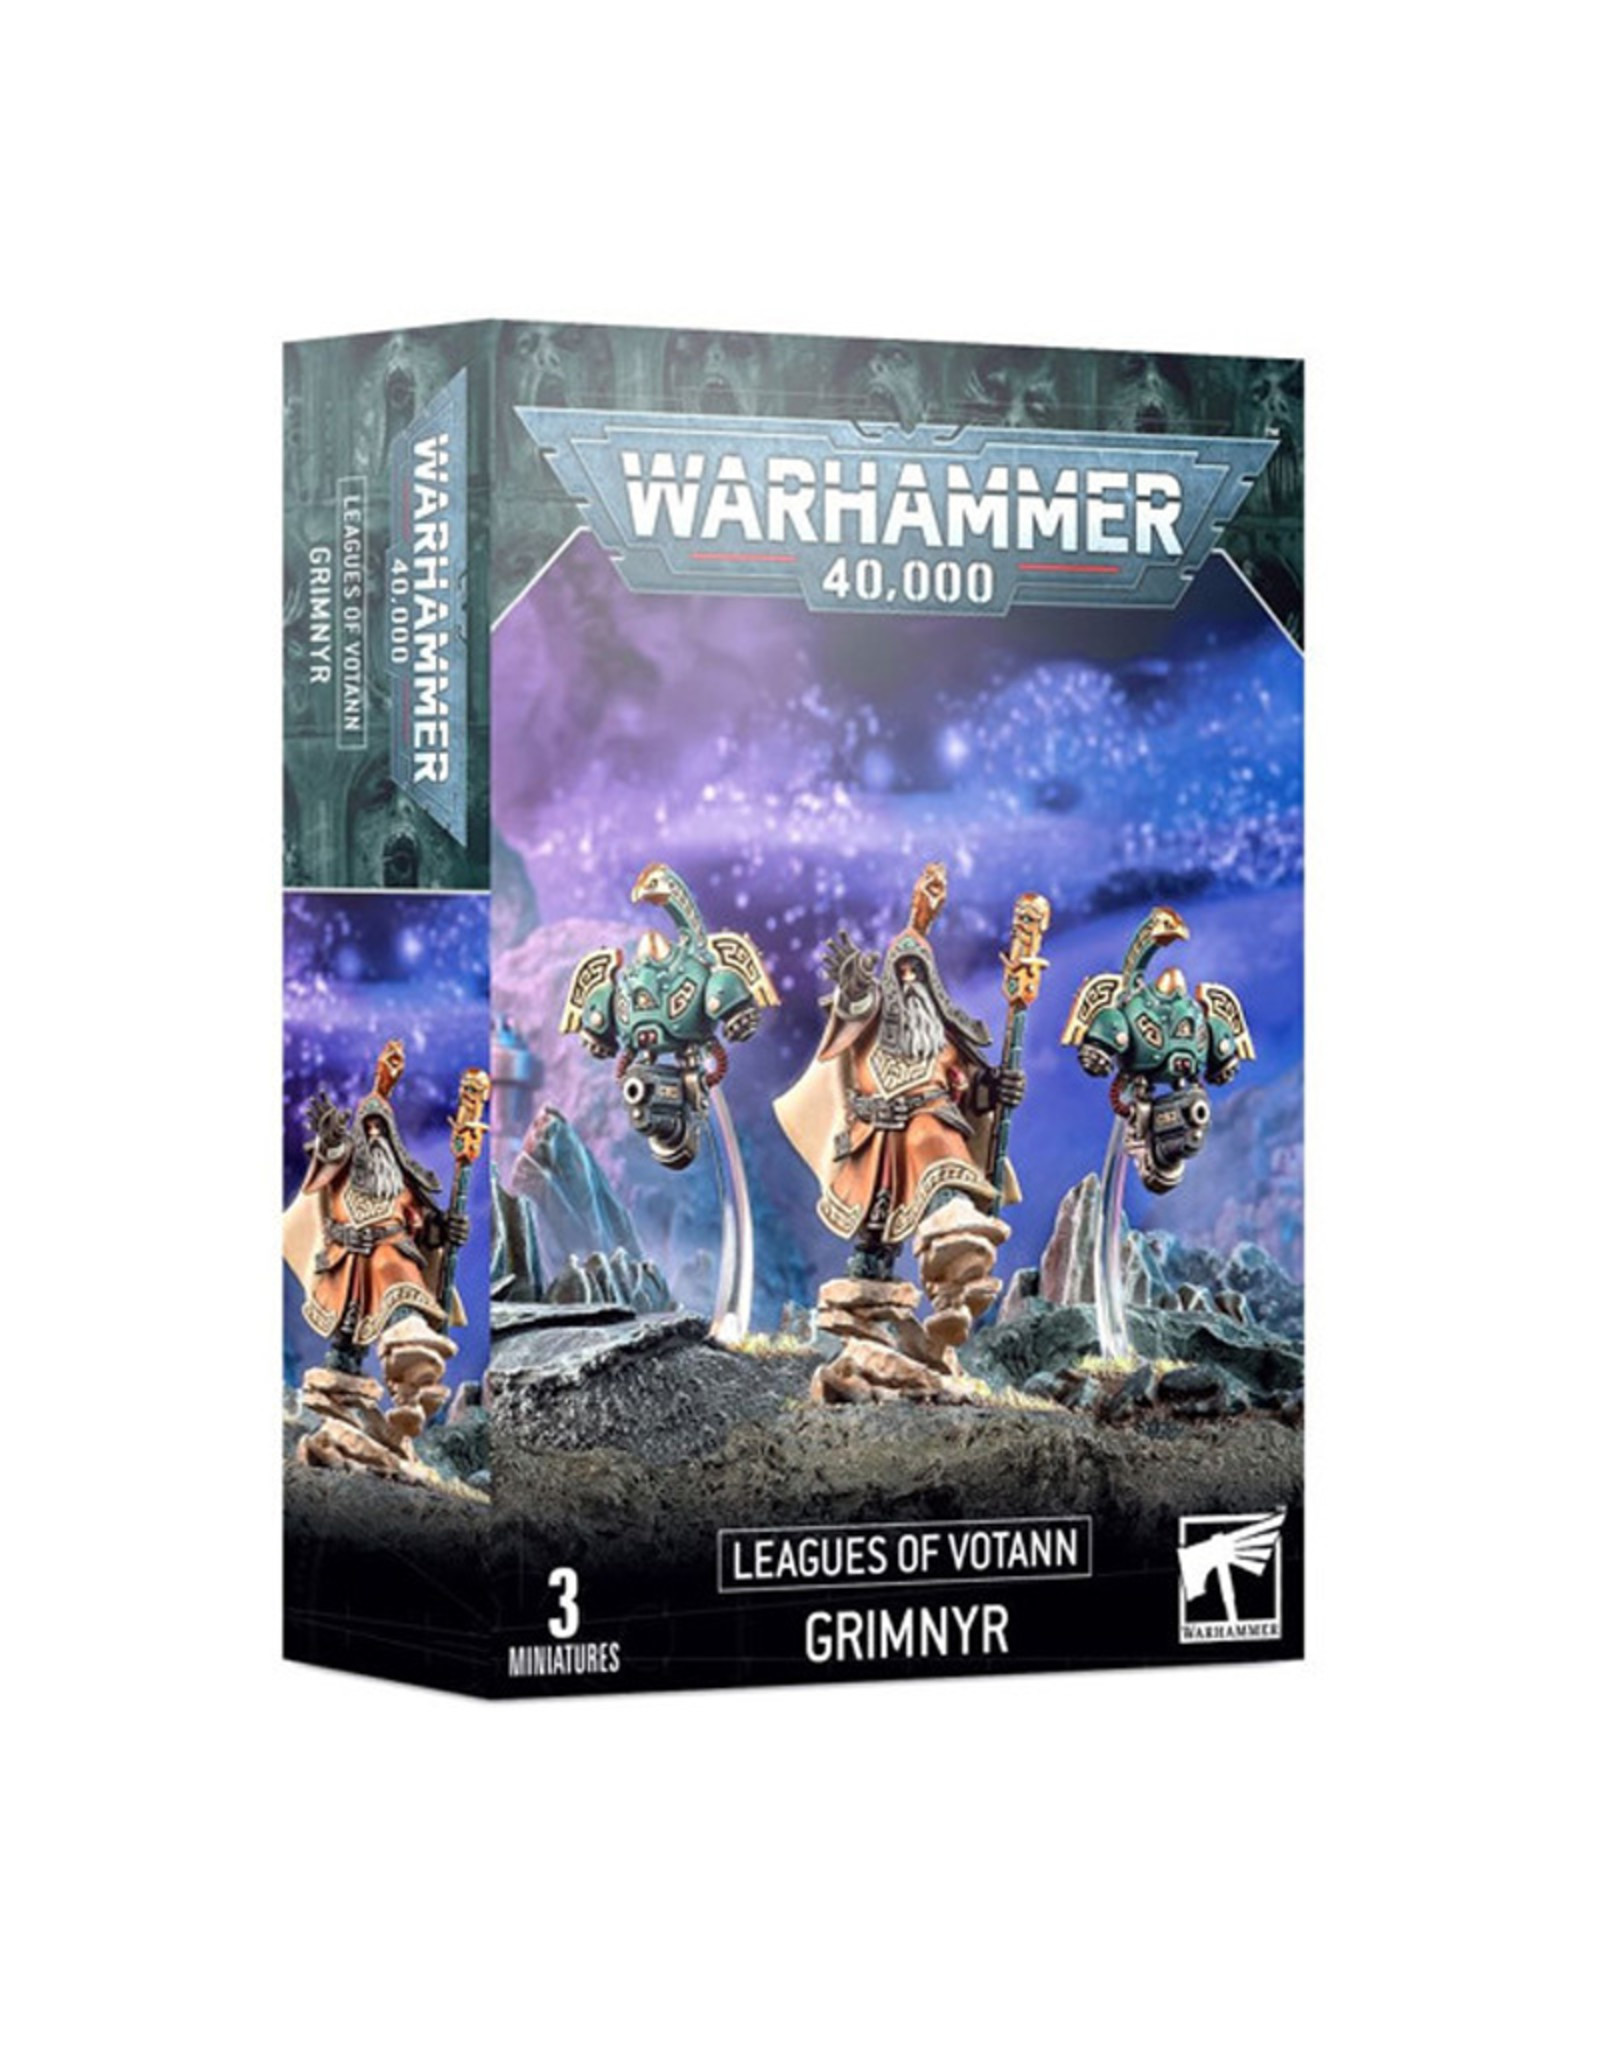 Games Workshop Warhammer 40,000: Leagues of Votann Grimnyr